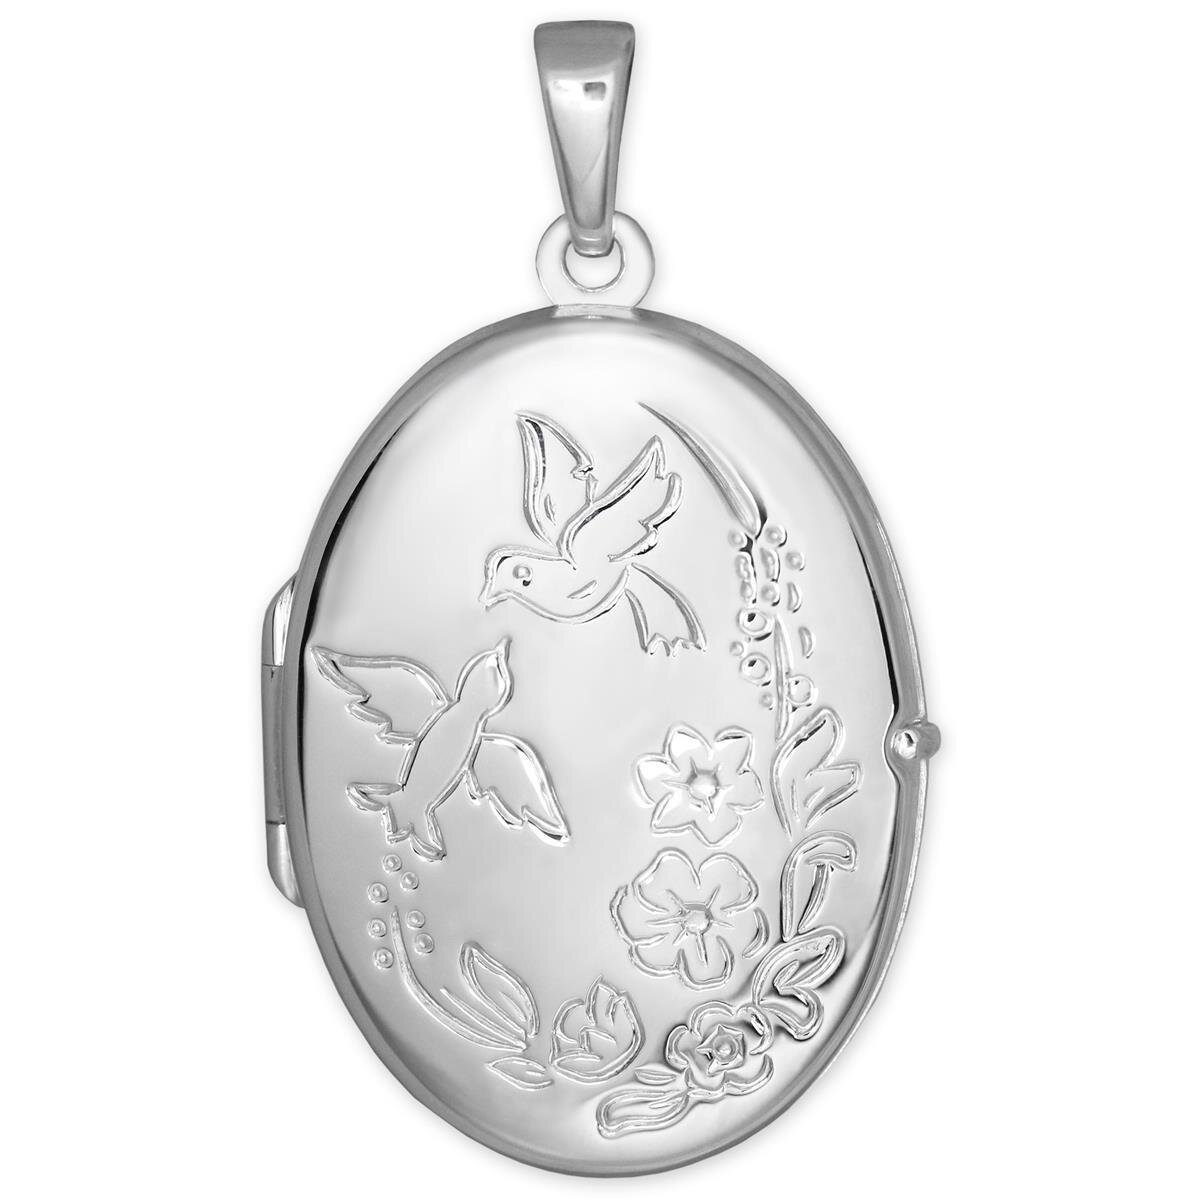 Silbernes Medaillon oval 22 mm Taube und Blume verziert Echt Silber 925